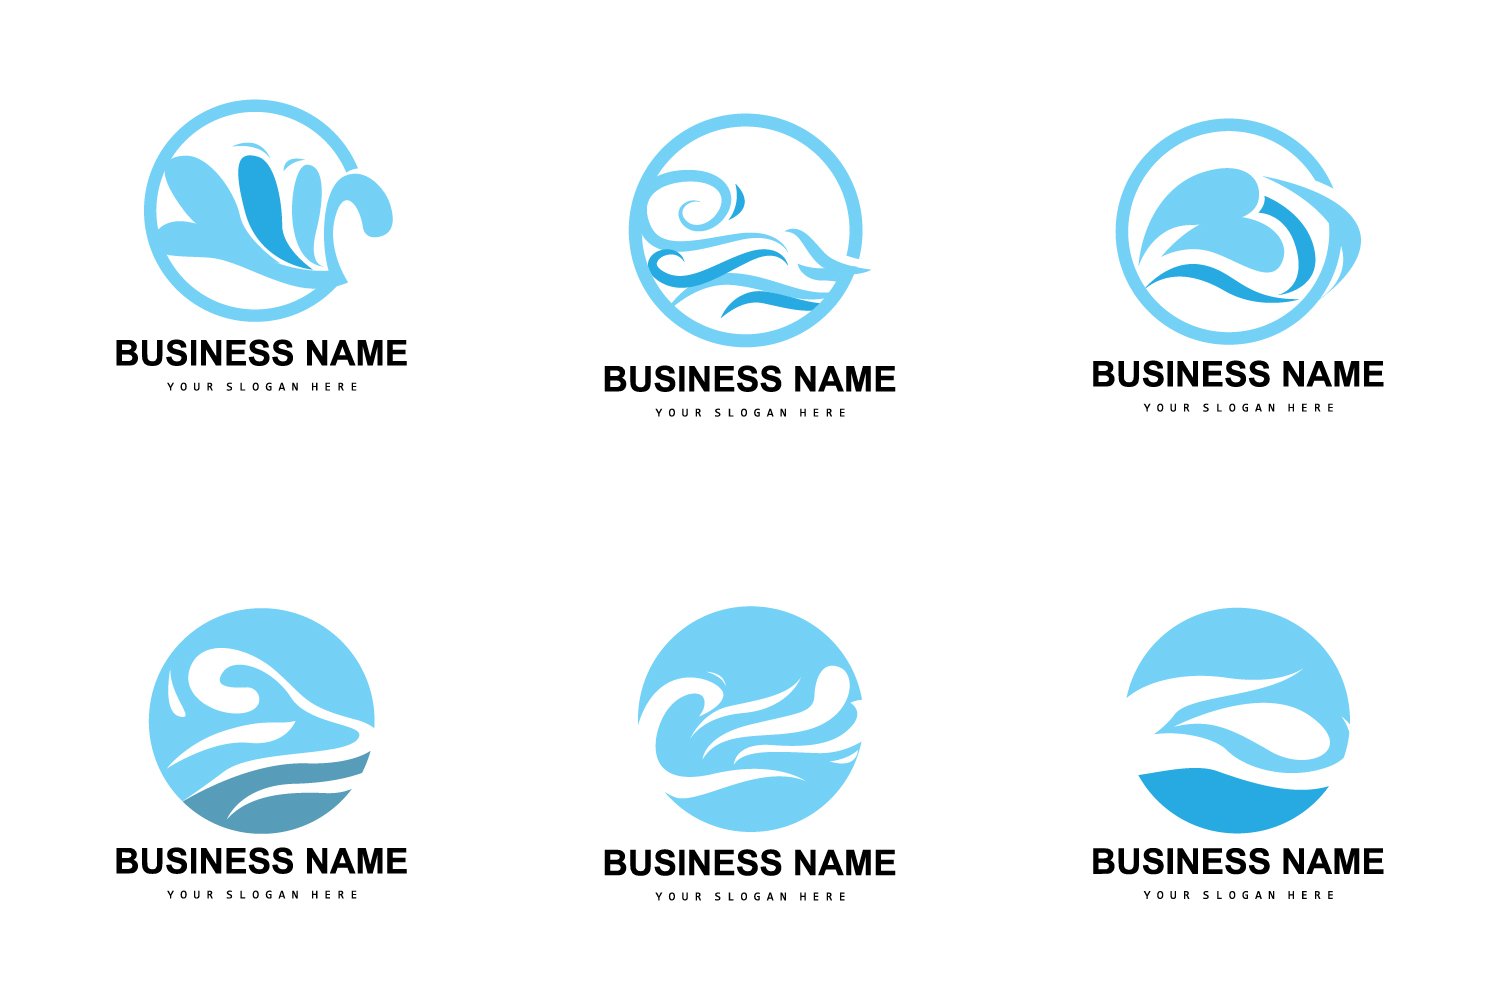 Kit Graphique #414476 Water Vecteur Divers Modles Web - Logo template Preview